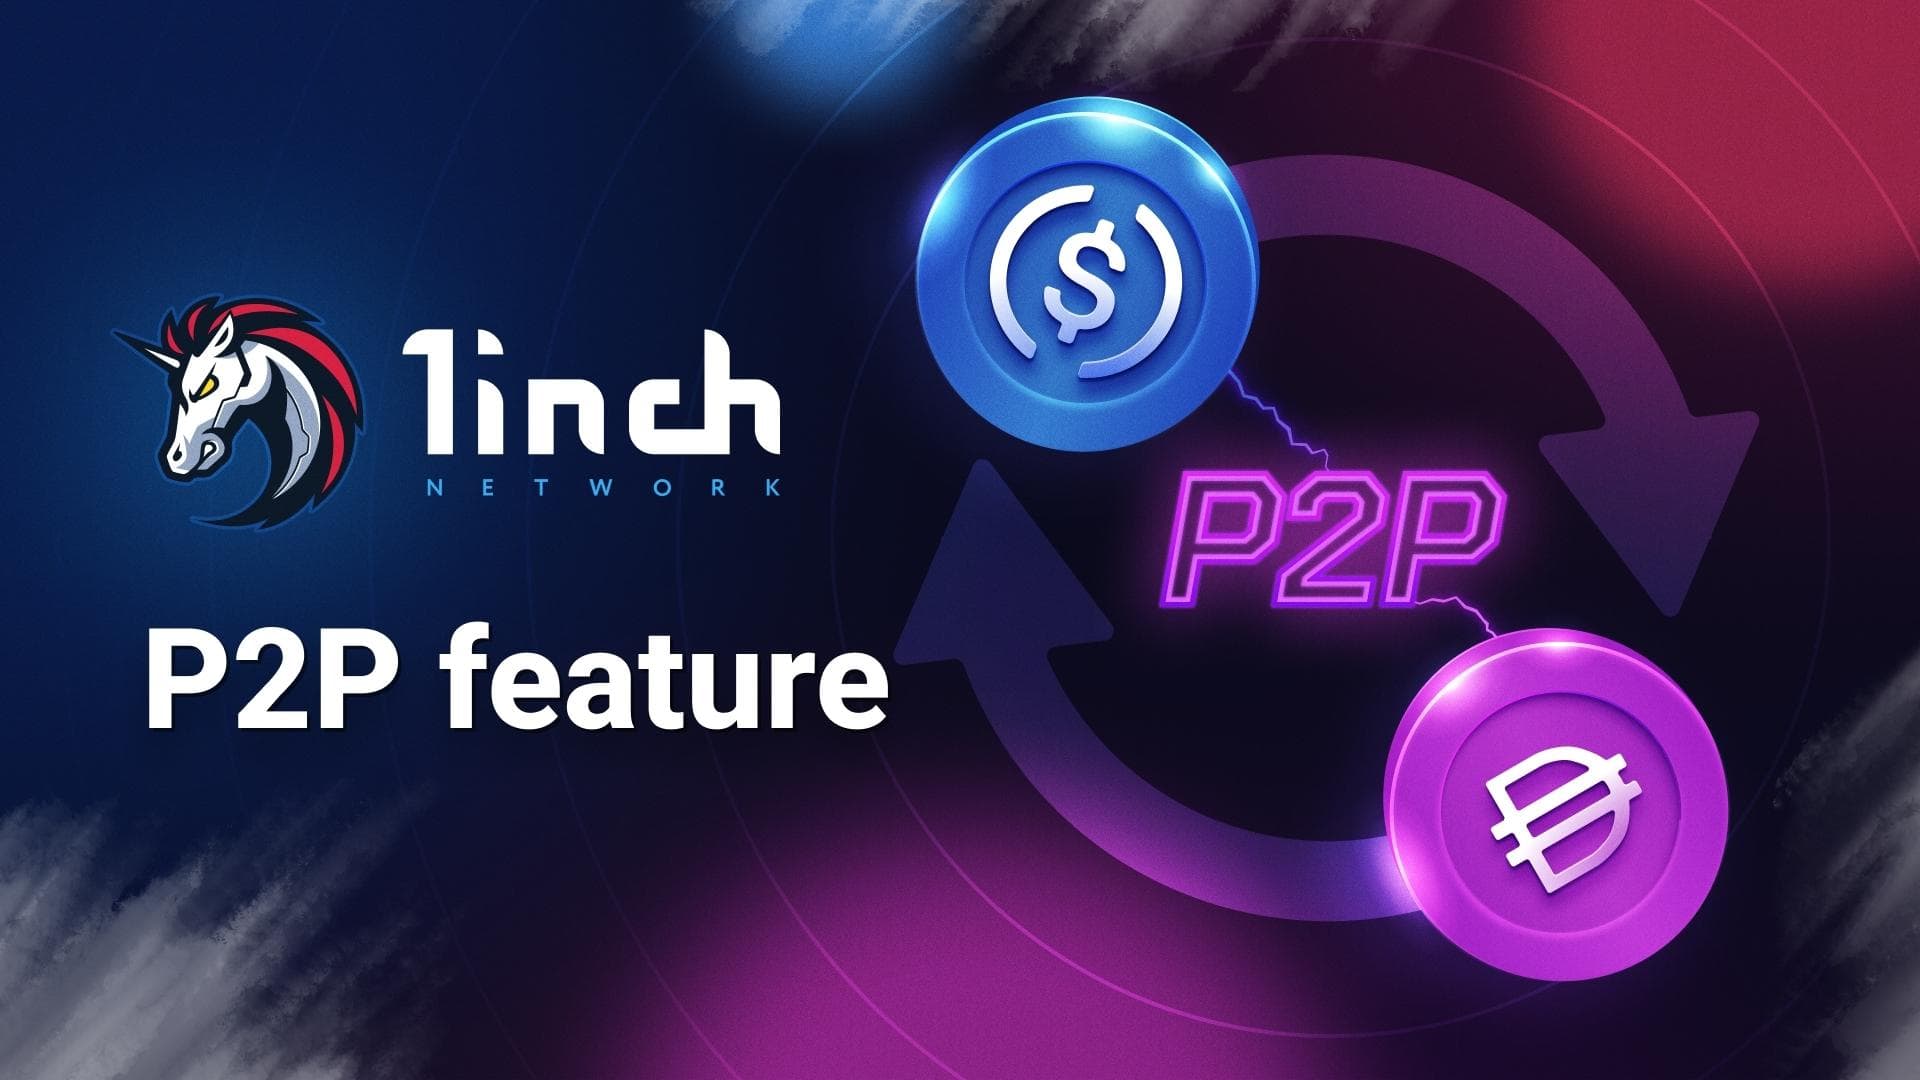 1inch добавляет P2P-ордера. Заглавный коллаж новости.